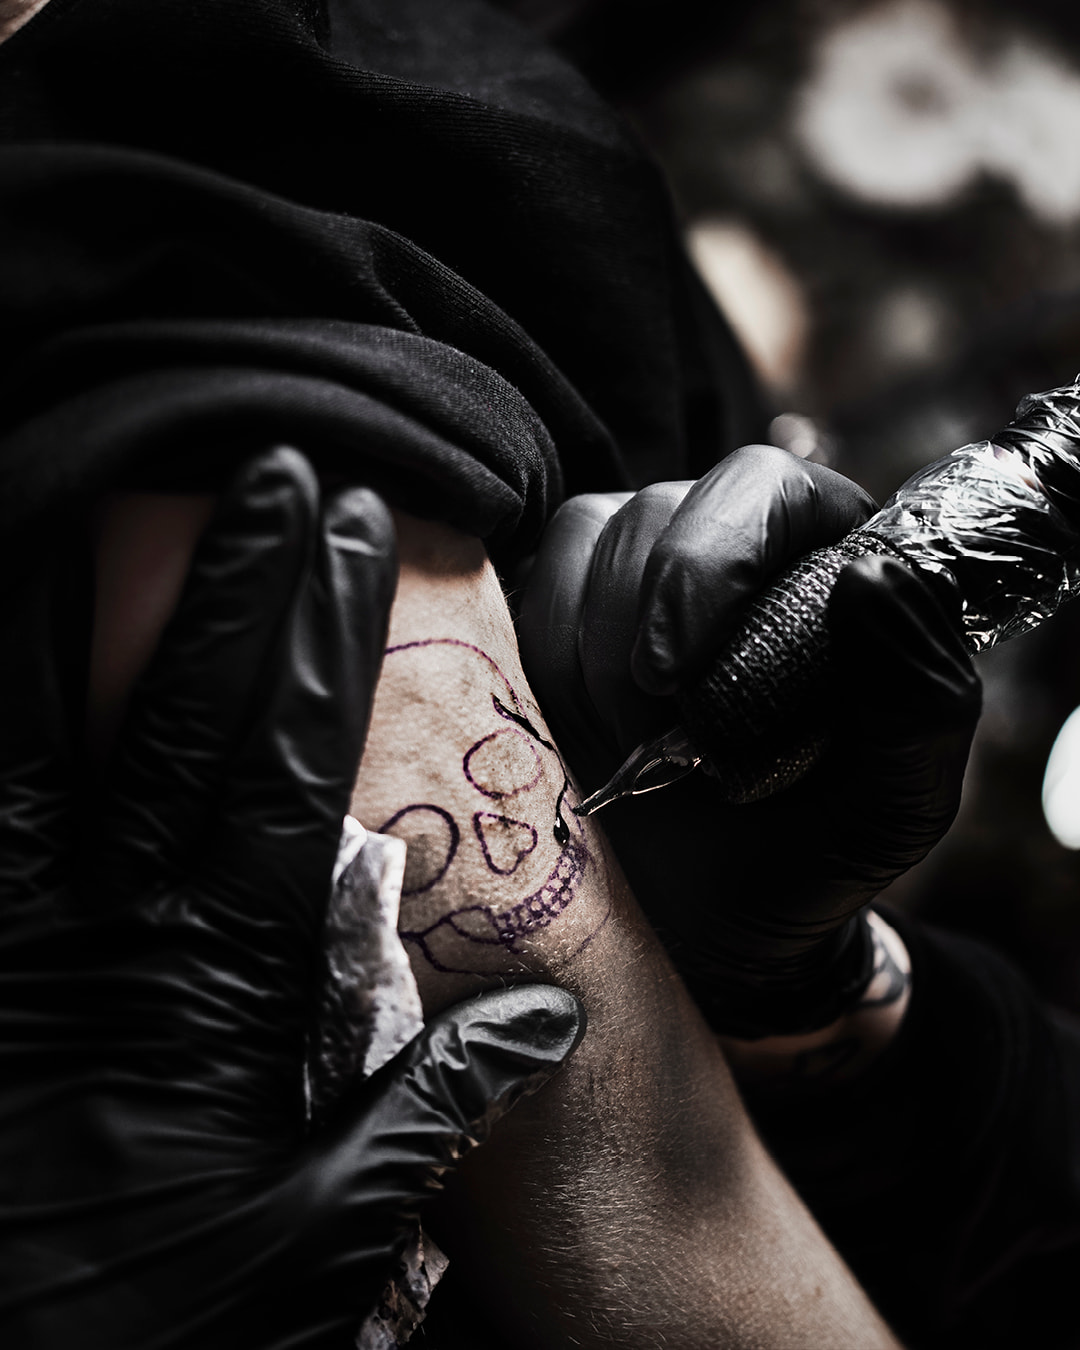 En person blir tatuerad med en dödsskalle